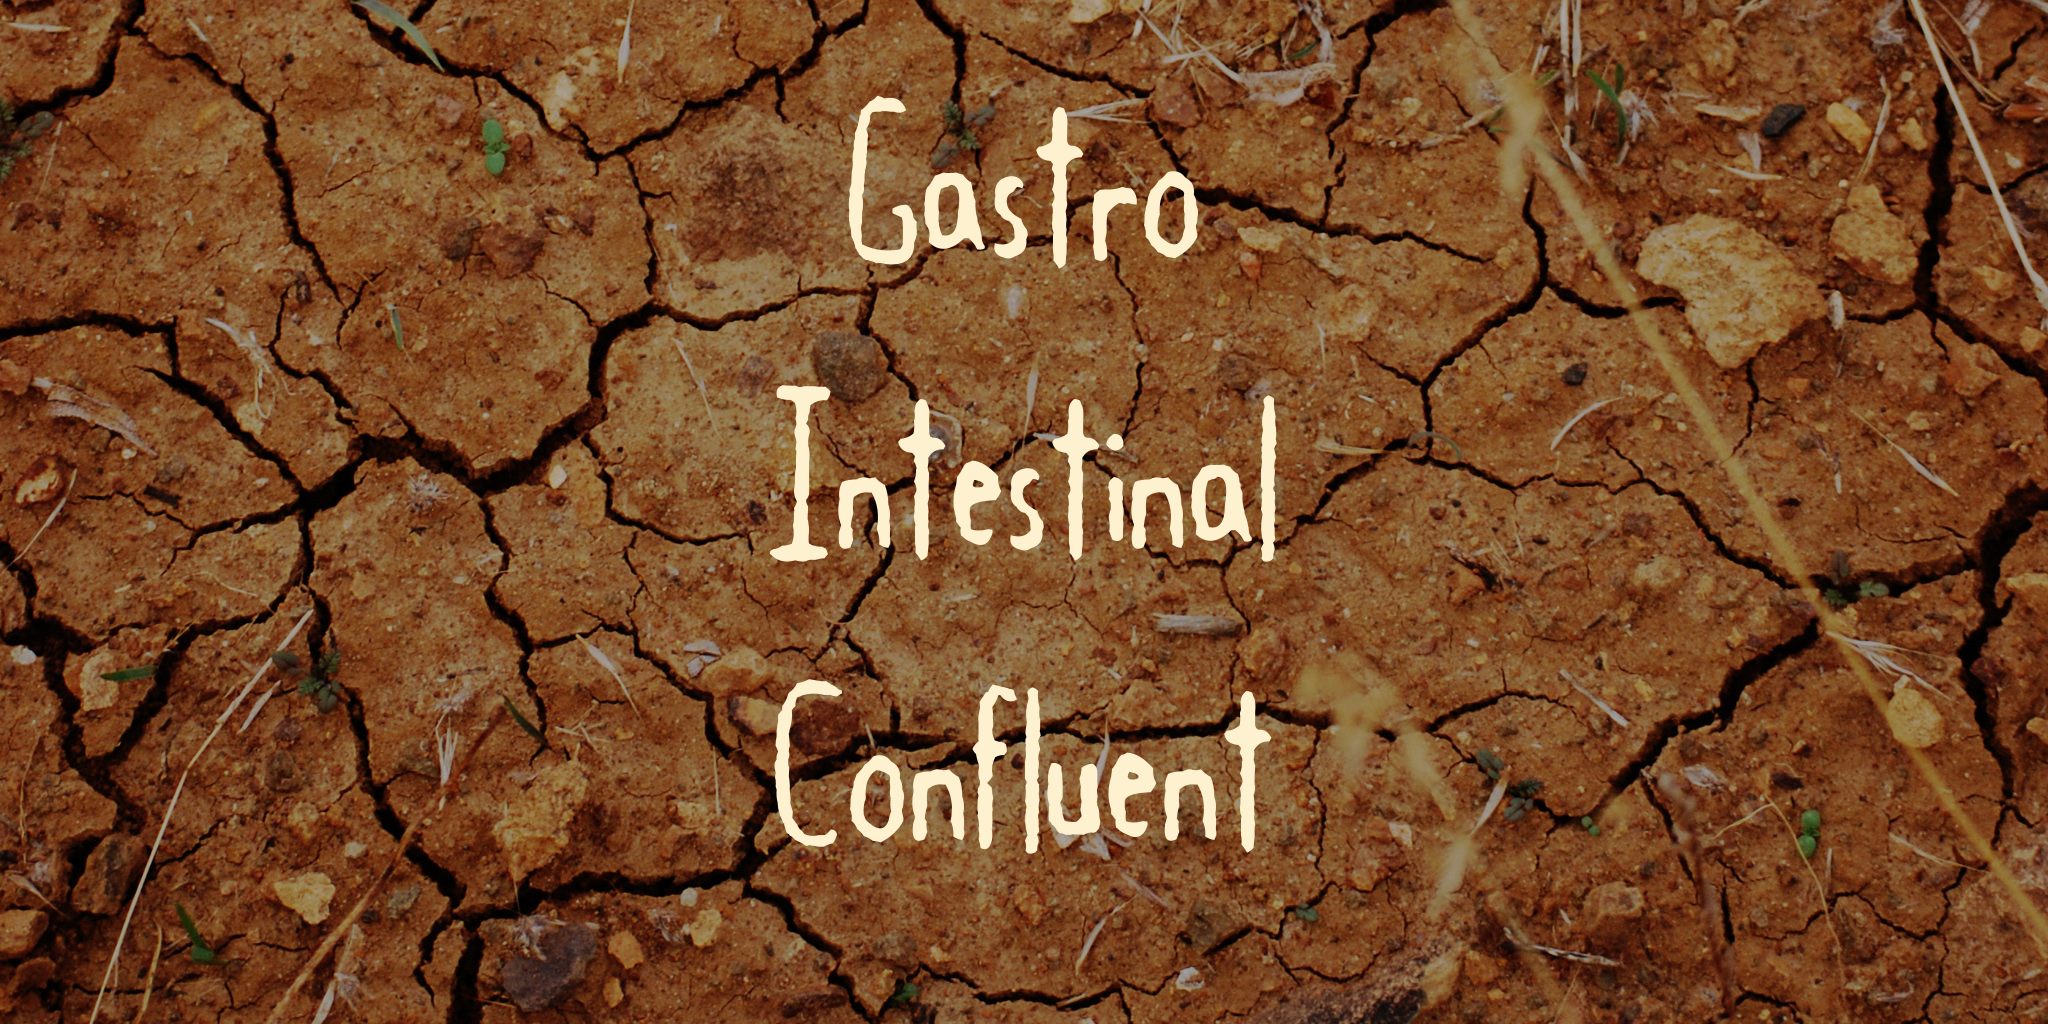 Gastro Intestinal Confluent